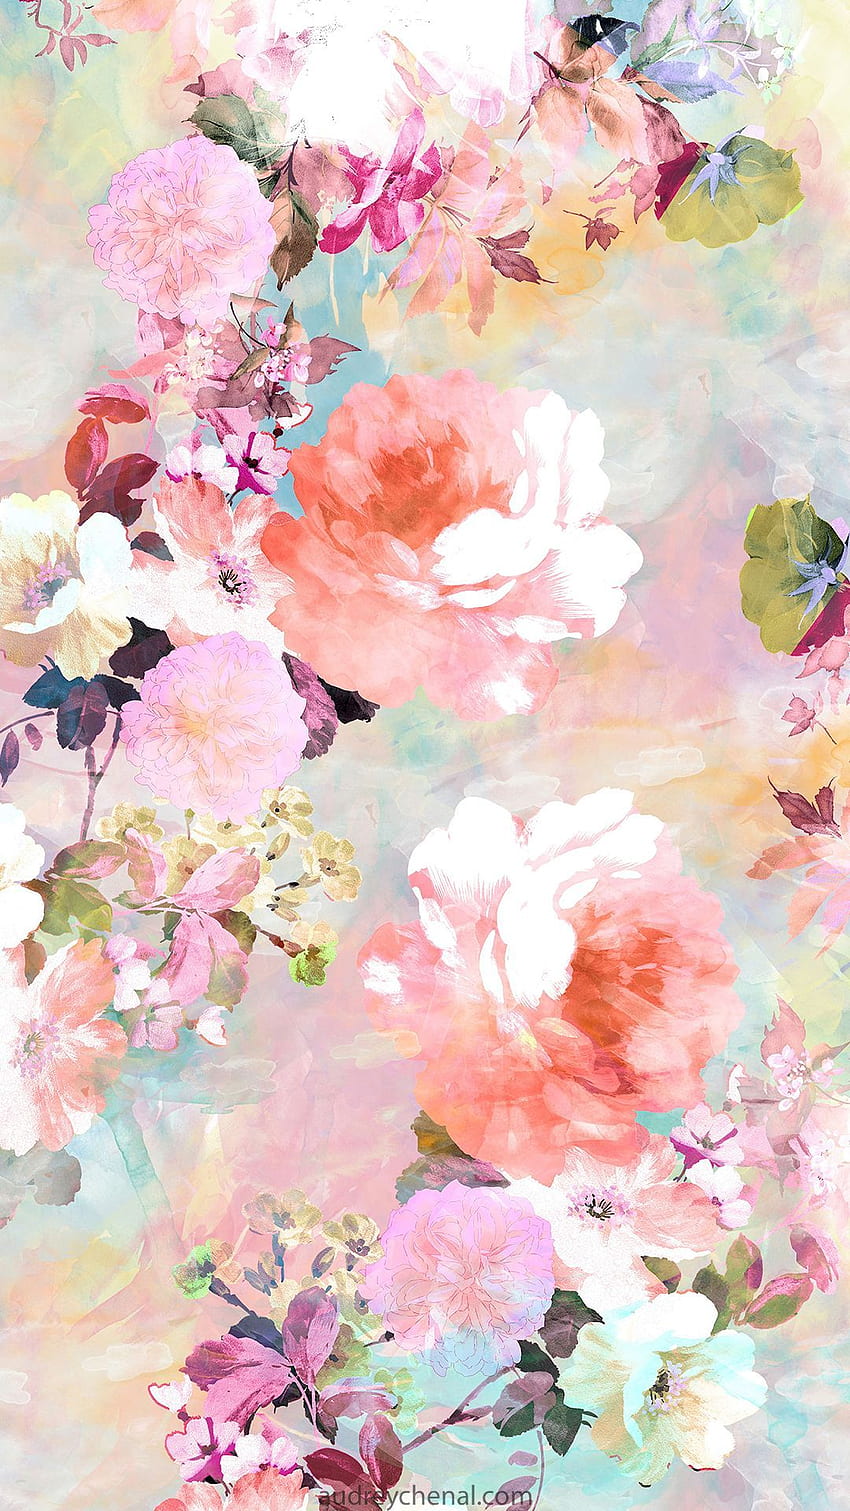 オードリー・シェナルによる花の水彩パステルパターン。 これはオリジナルの HD電話の壁紙